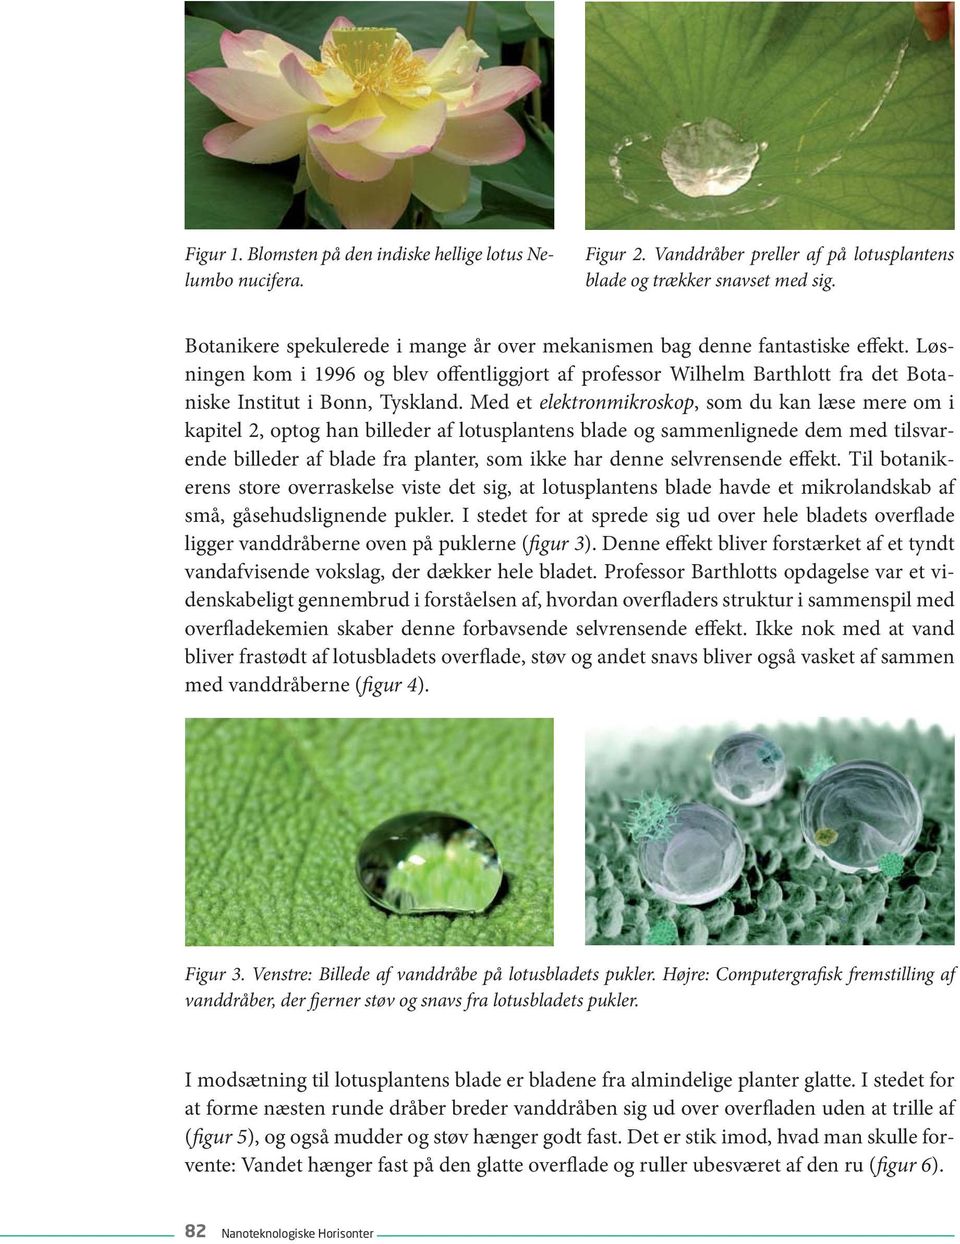 Med et elektronmikroskop, som du kan læse mere om i kapitel 2, optog han billeder af lotusplantens blade og sammenlignede dem med tilsvarende billeder af blade fra planter, som ikke har denne